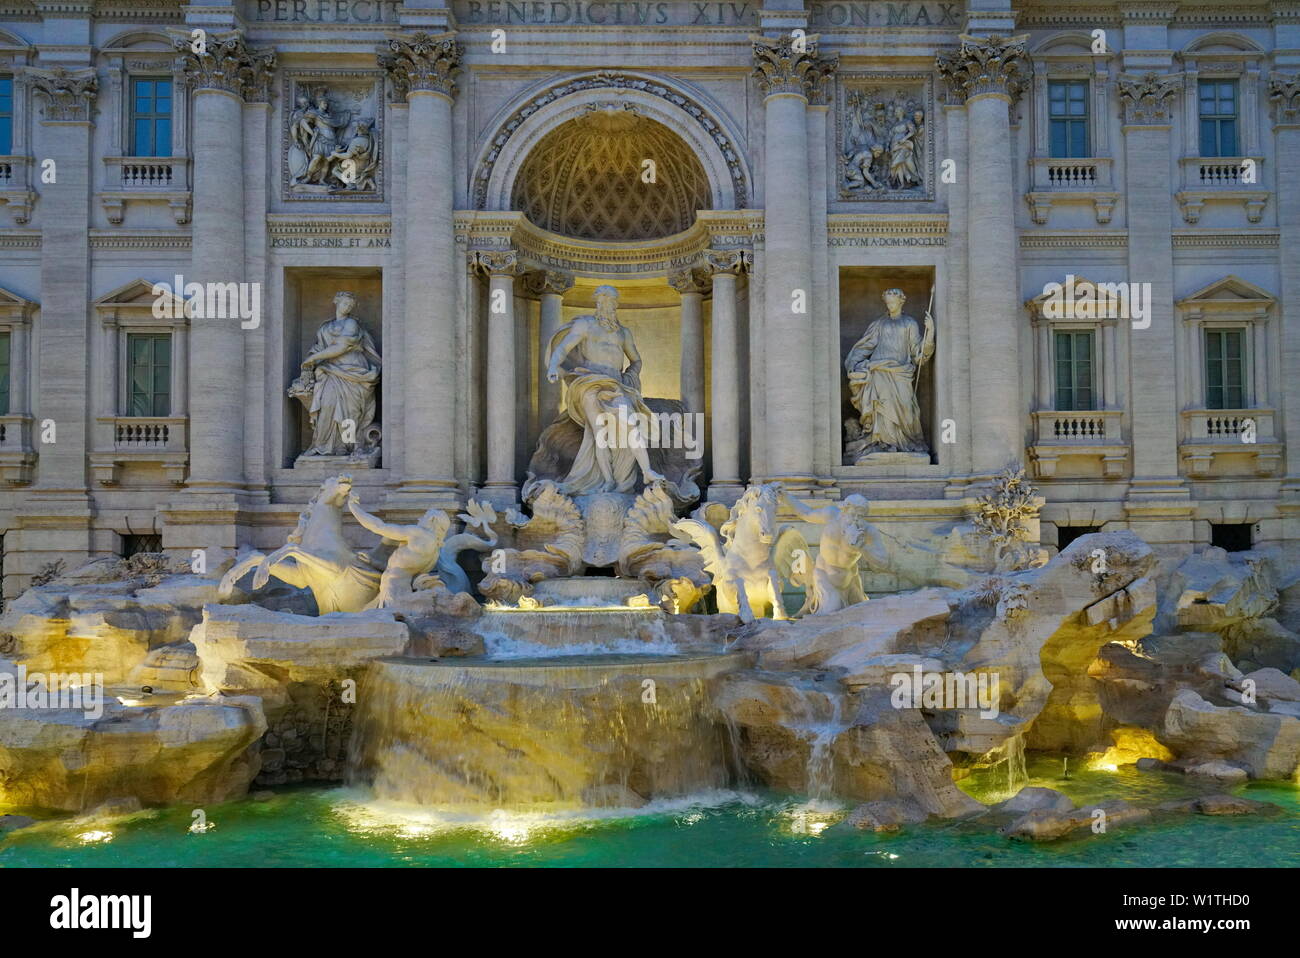 Famoso e uno dei più bella fontana di Roma - Fontana di Trevi (Fontana di Trevi). Italia Foto Stock